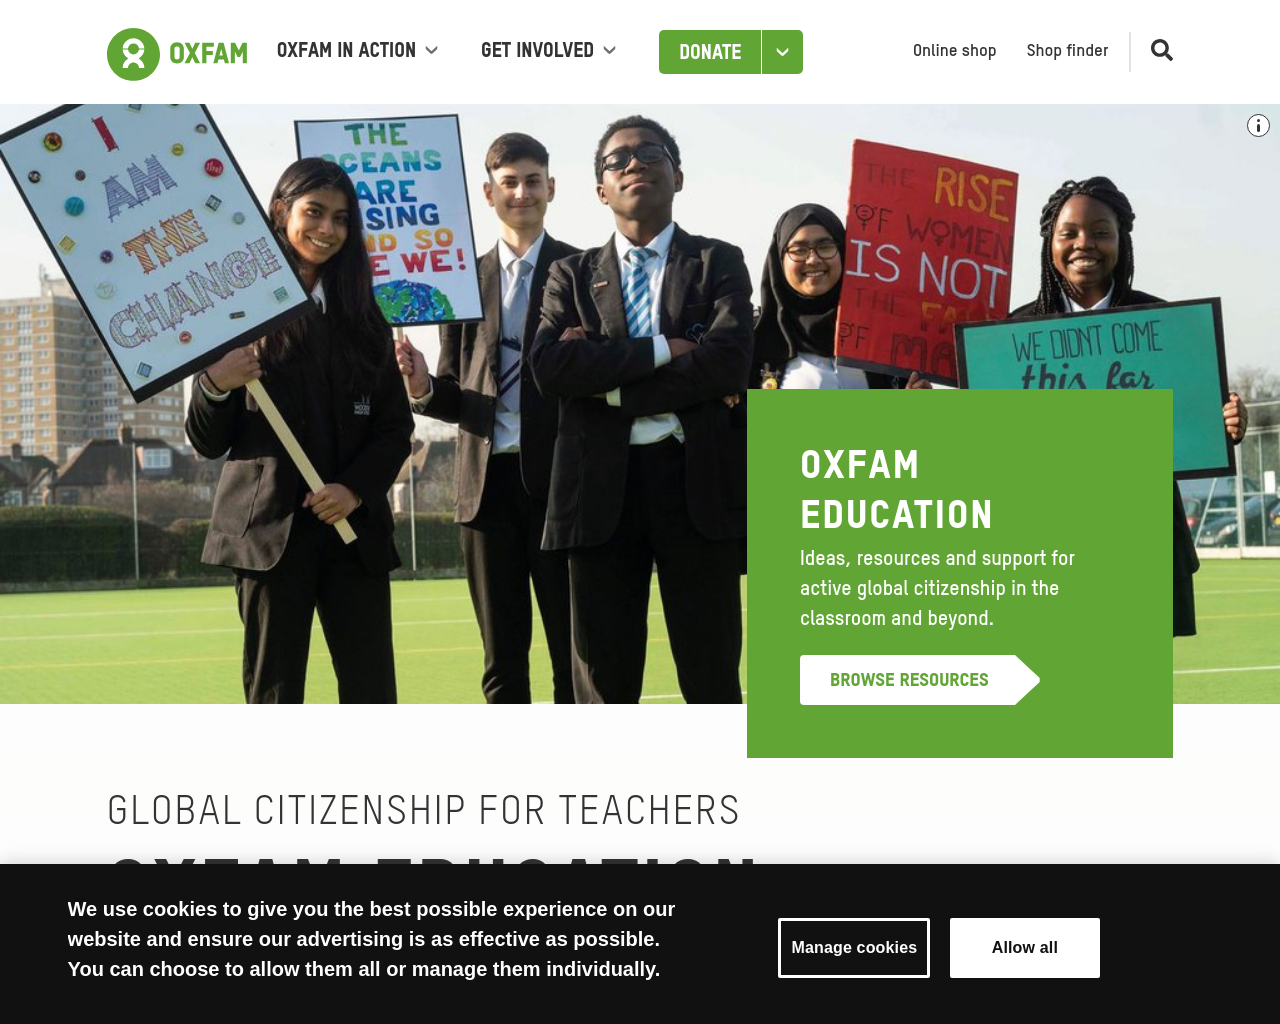 oxfam.org.uk/education